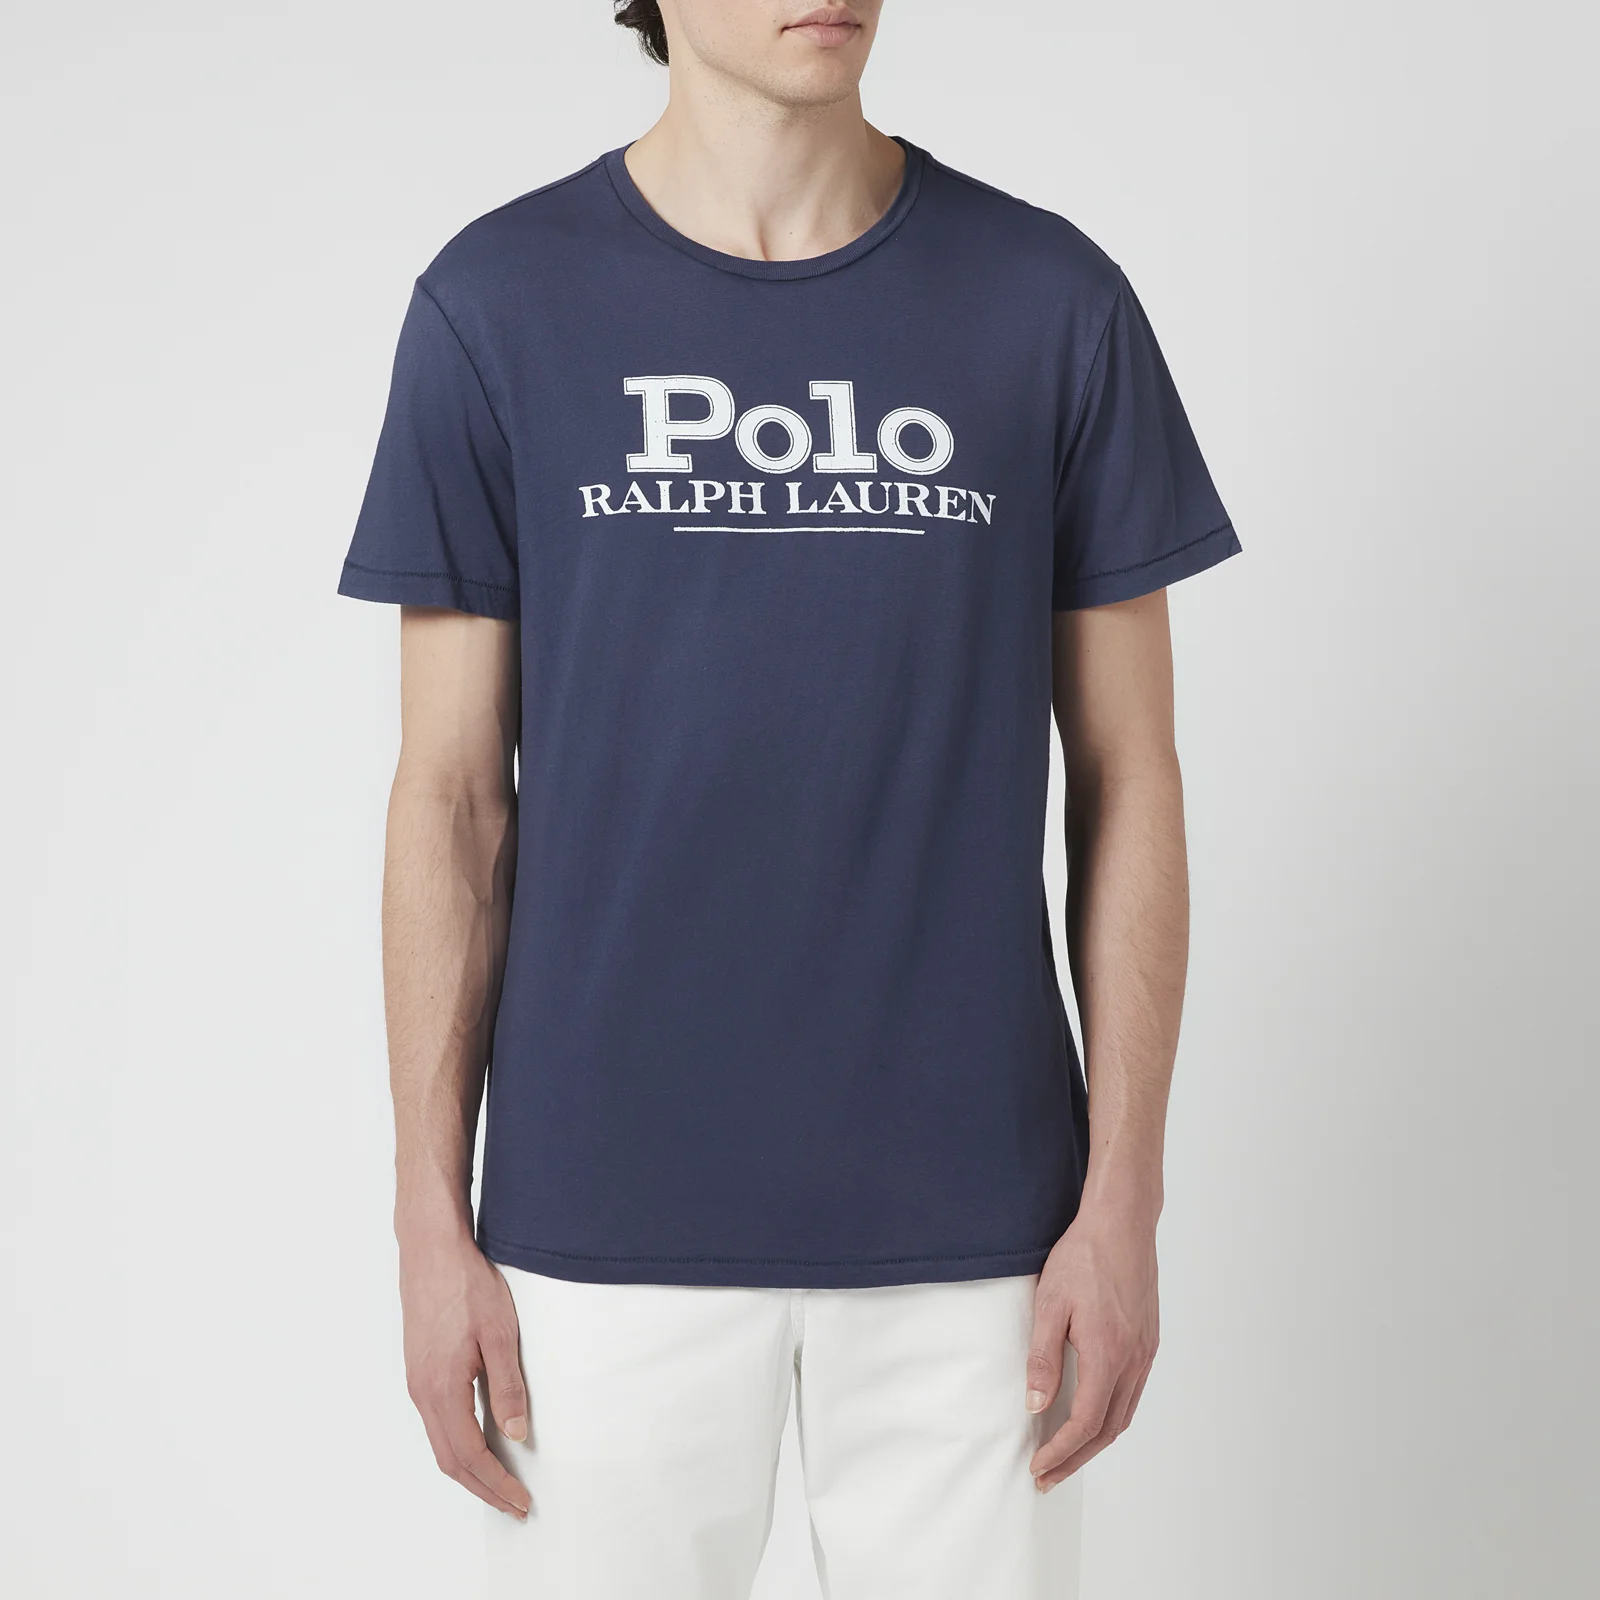 Polo Ralph Lauren Men's Polo Logo T-Shirt - Cruise Navy Image 1